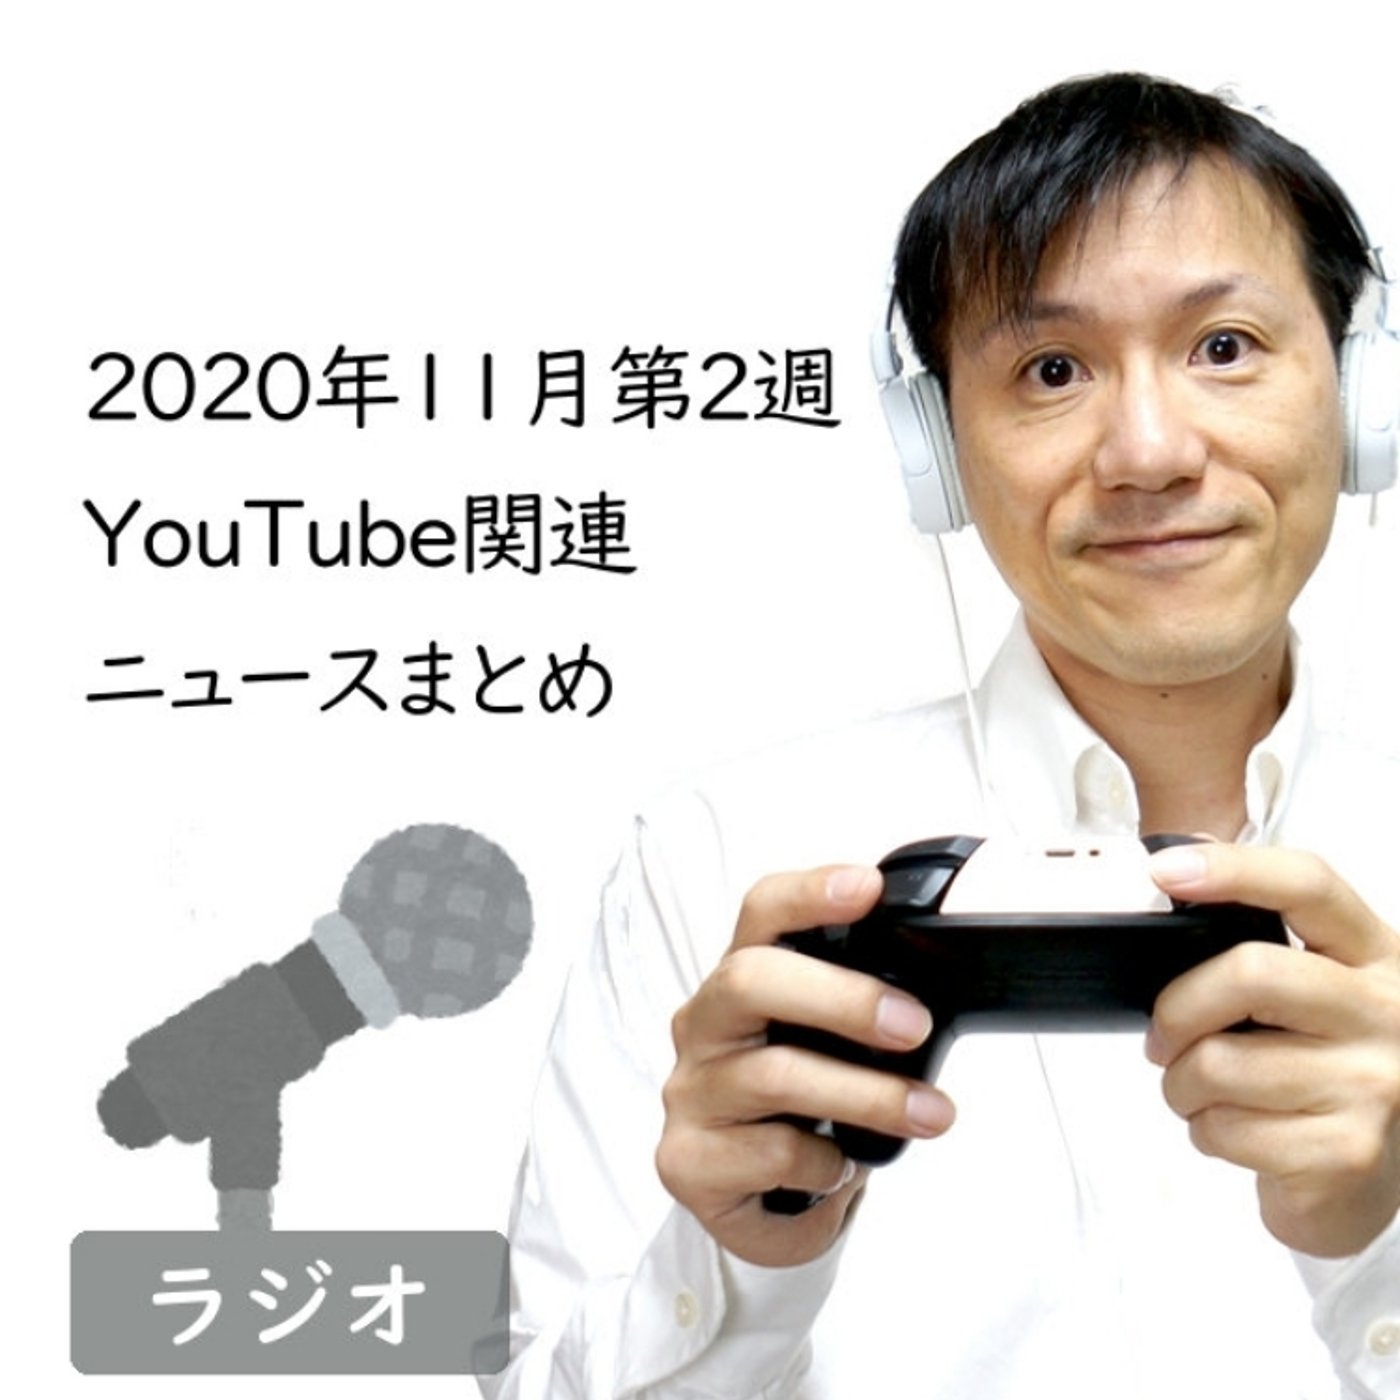 【#251】2020年11月第2週YouTube関連ニュースまとめ〜変わる202